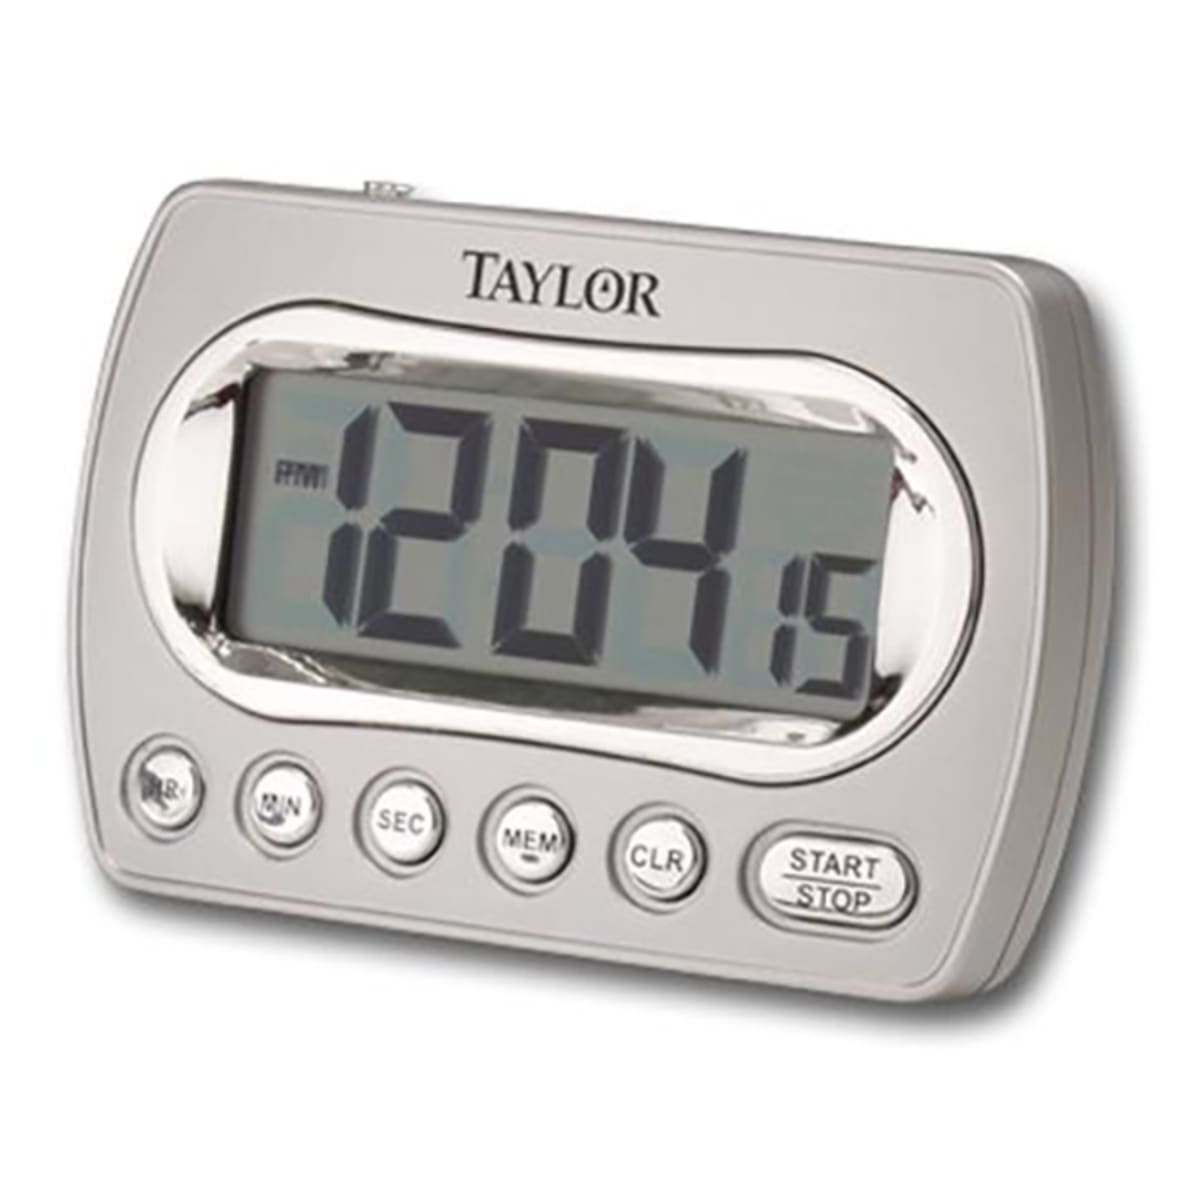 I de fleste tilfælde æstetisk Burger Taylor® Precision 5847-21 Digital Chrome Timer w/ Memory And Clock |  Wasserstrom